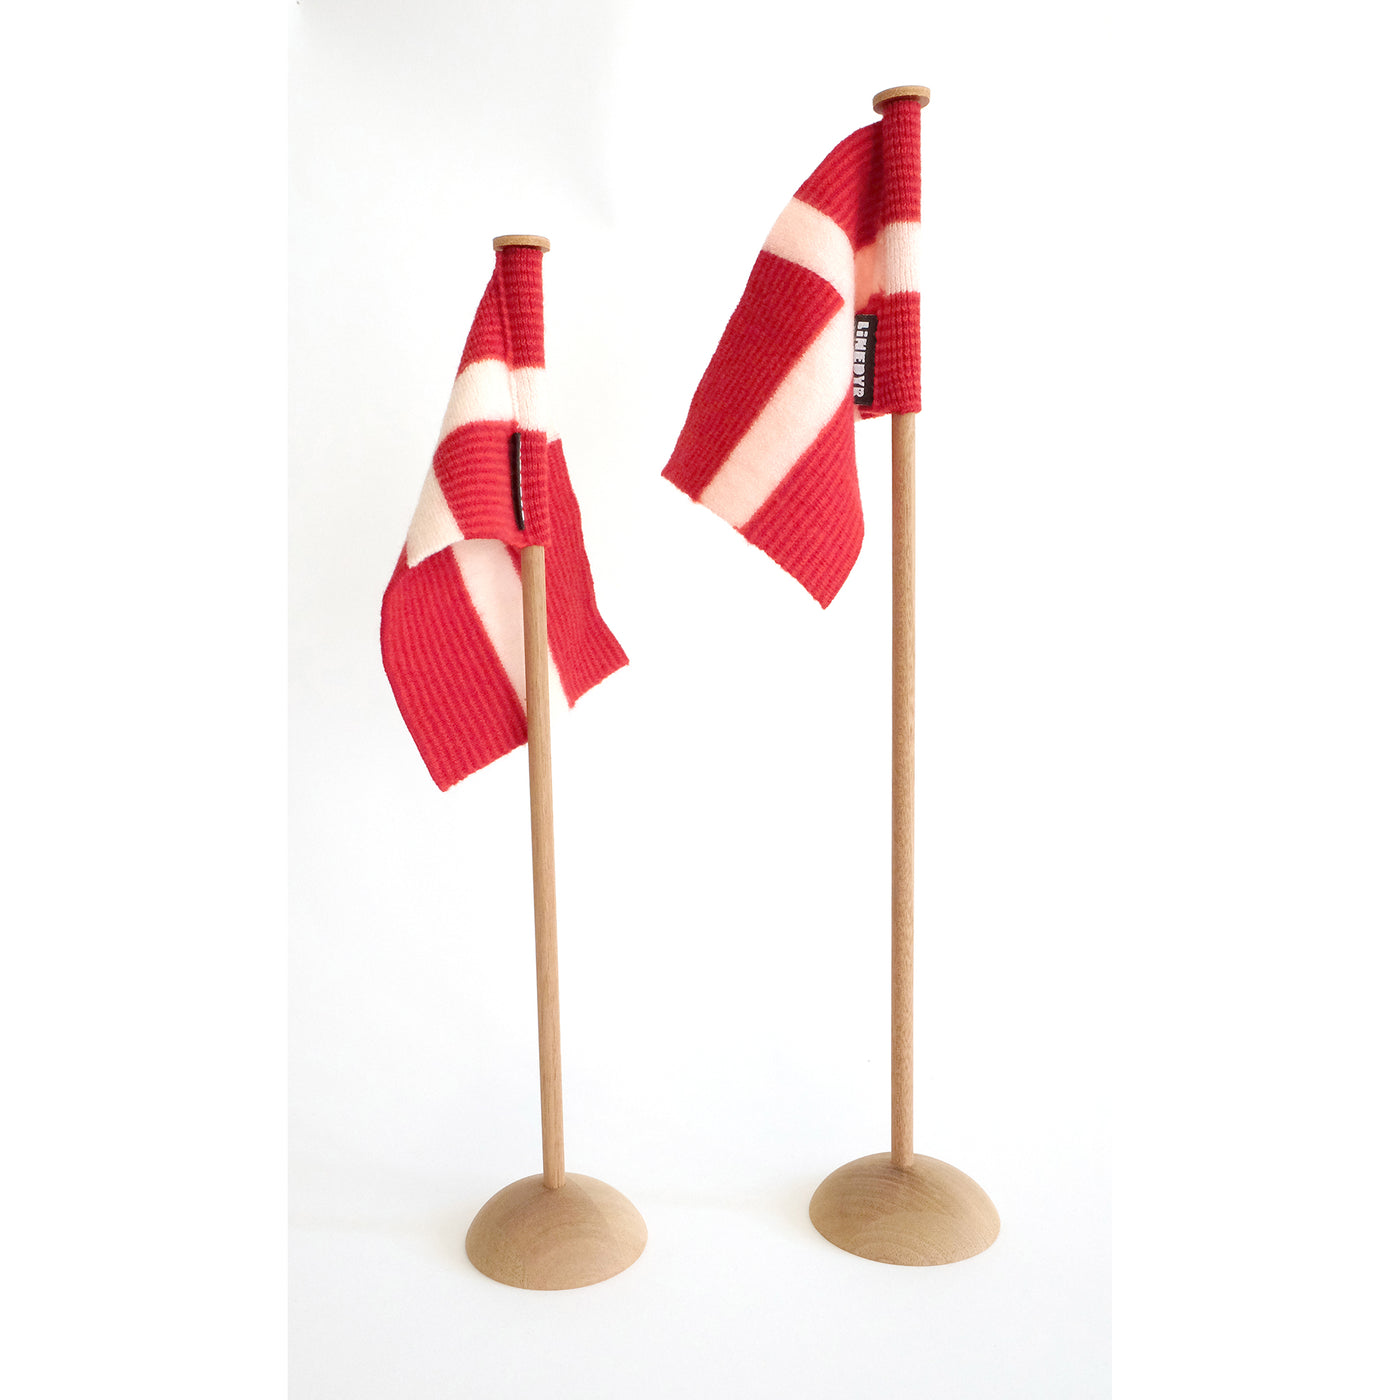 Linedyr bordflag, Dansk